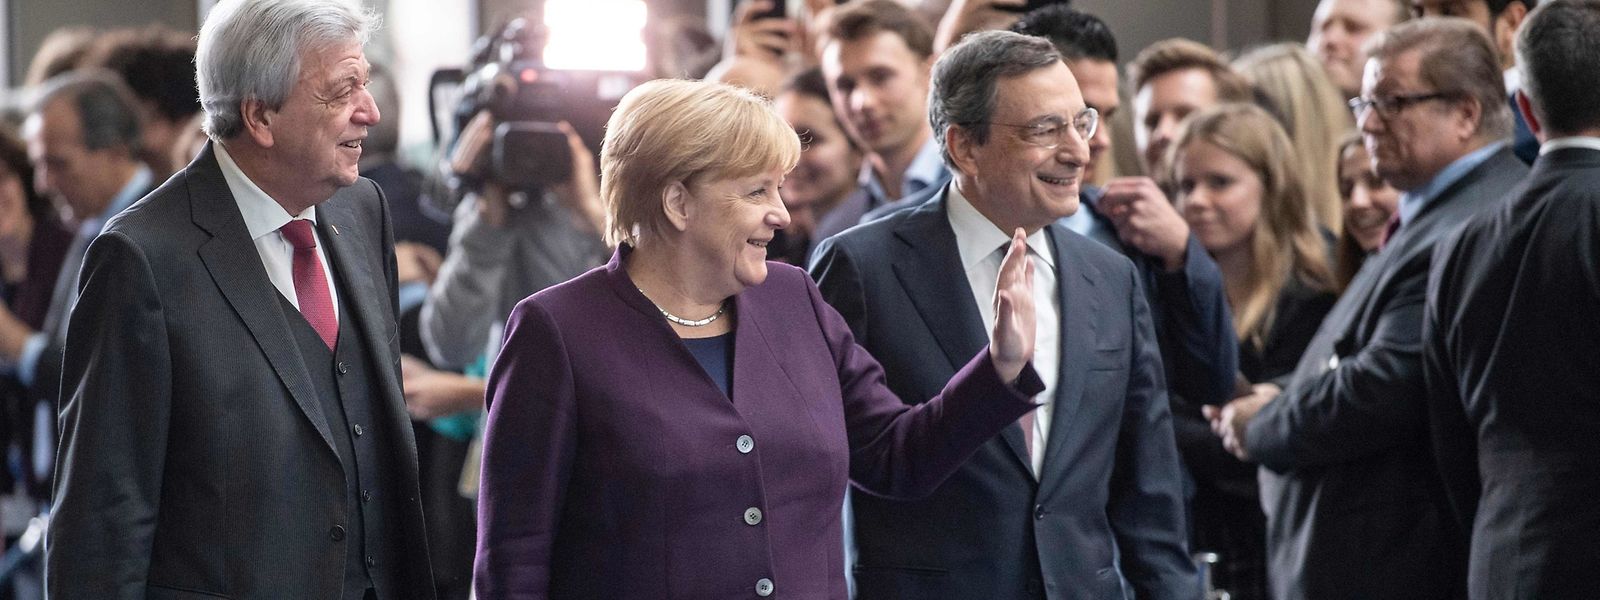 Der hessische Ministerpräsident Volker Bouffier, die deutsche Kanzlerin Angela Merkel und der scheidende EZB-Chef Mario Draghi.